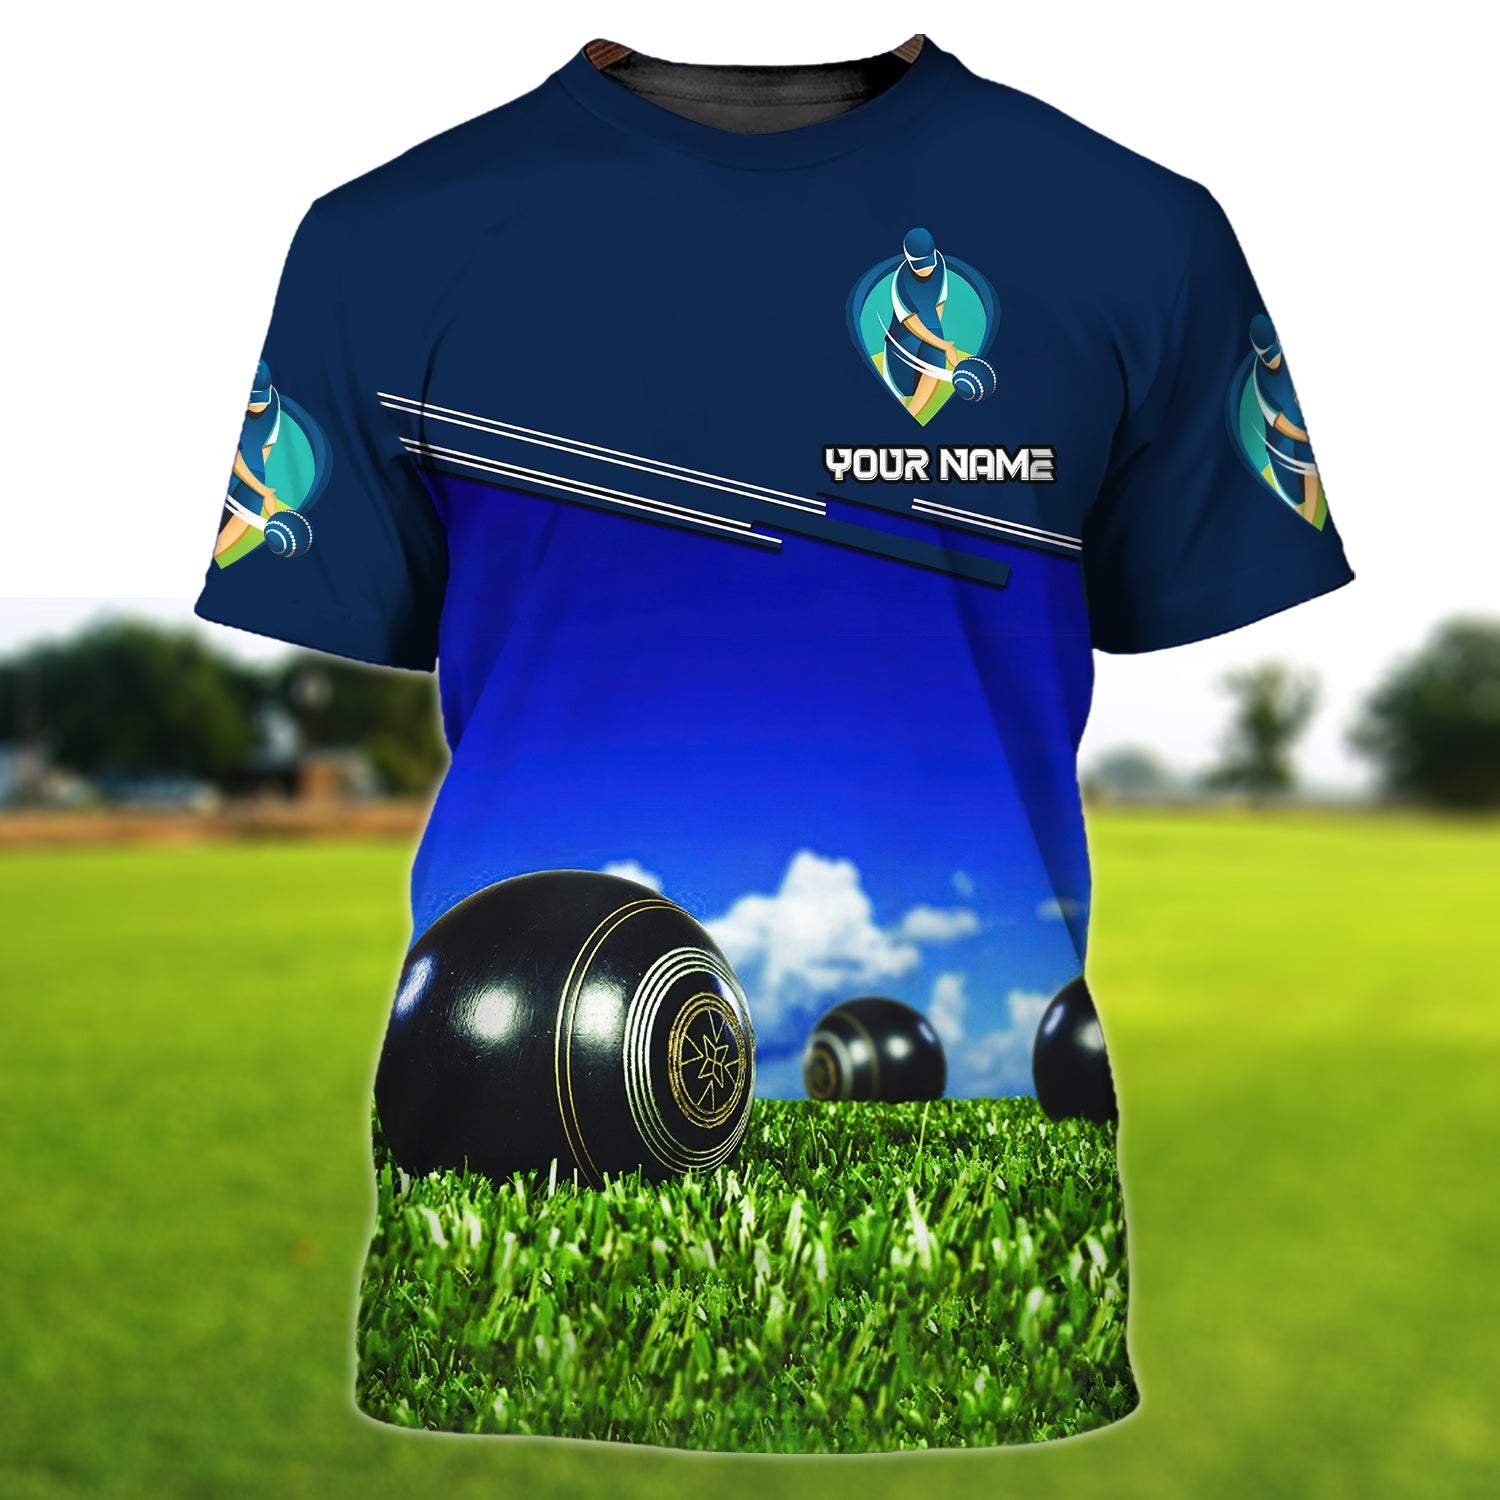 Personalized Lawn Bowl Shirt Lawn Bowls Player Shirt Gift For A Lawn Bowl Men Women